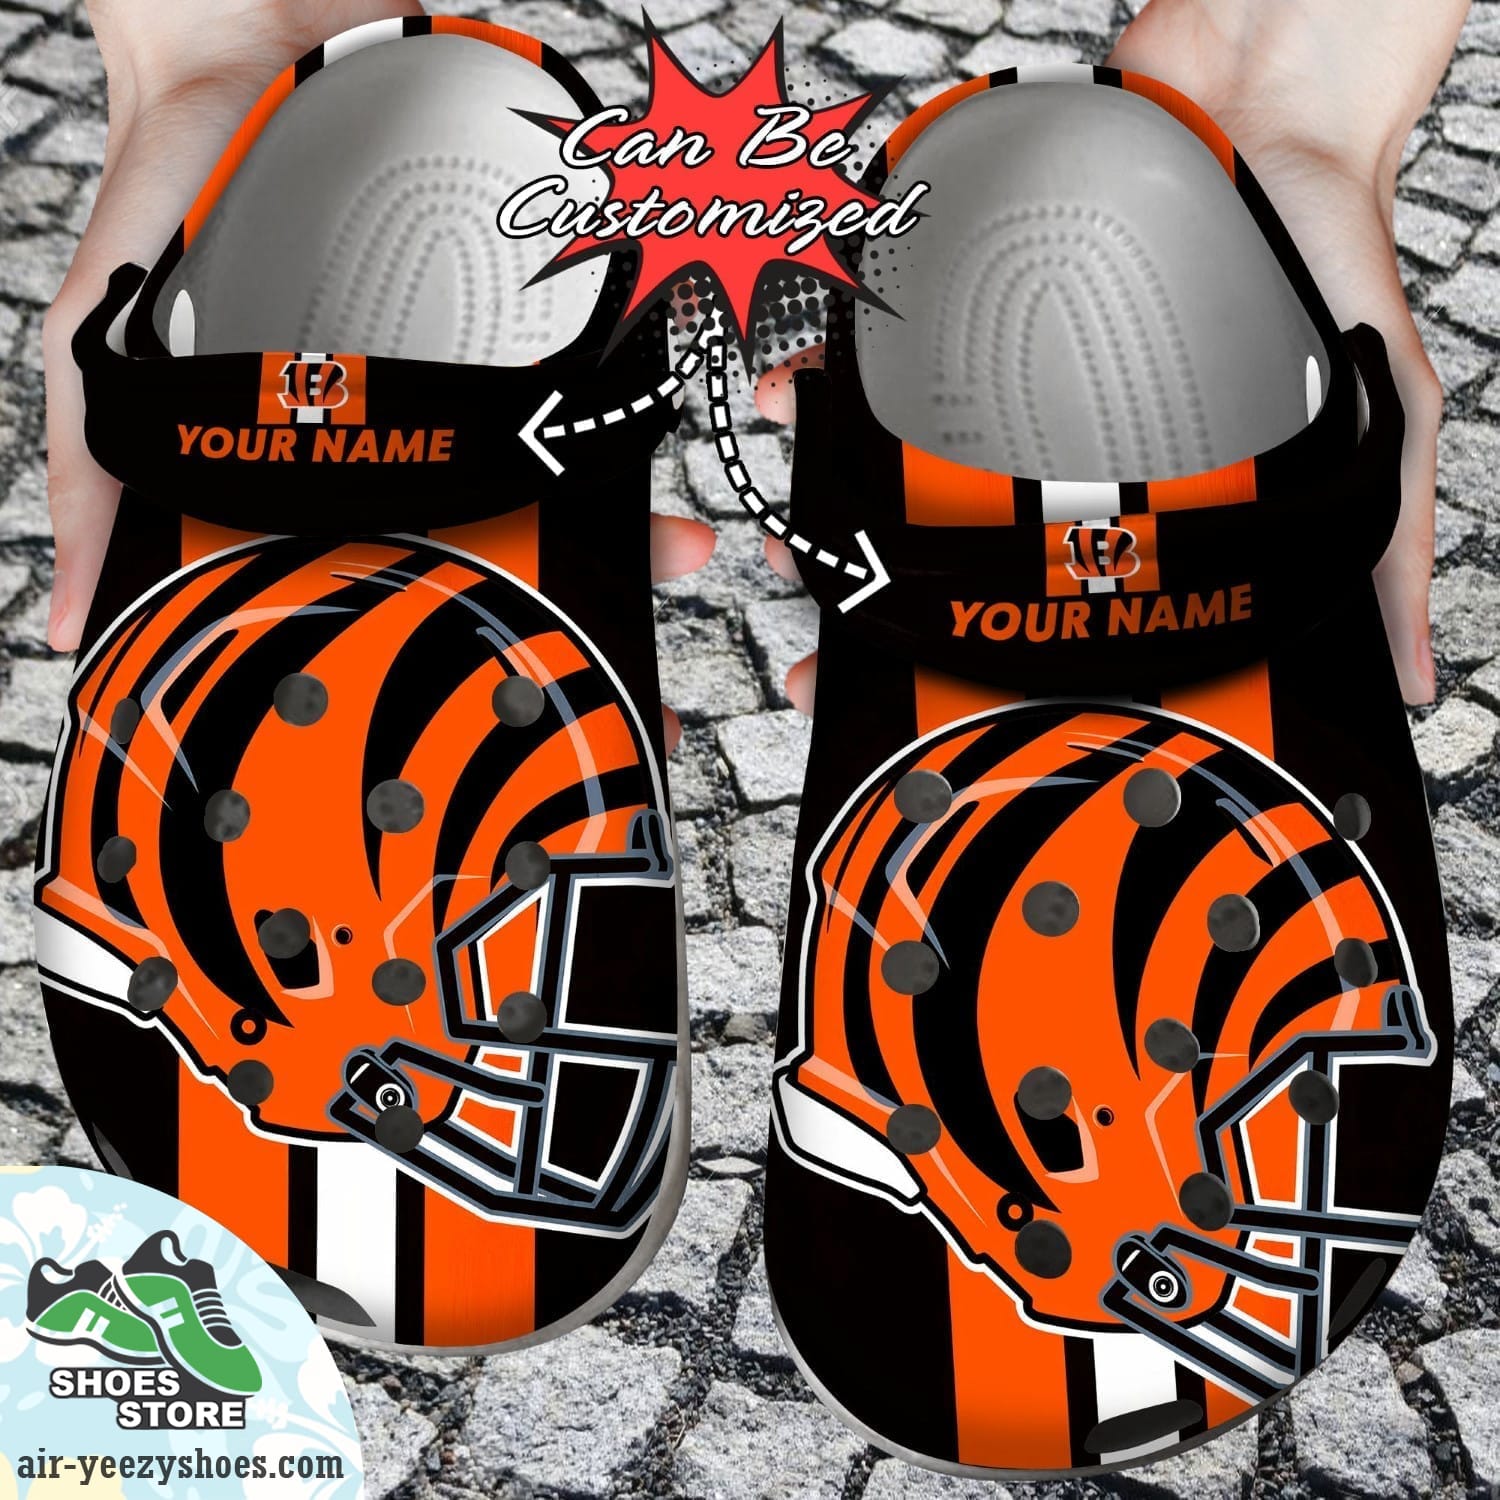 Personalized Cincinnati Bengals Team Helmets Clog Shoes, Football Crocs